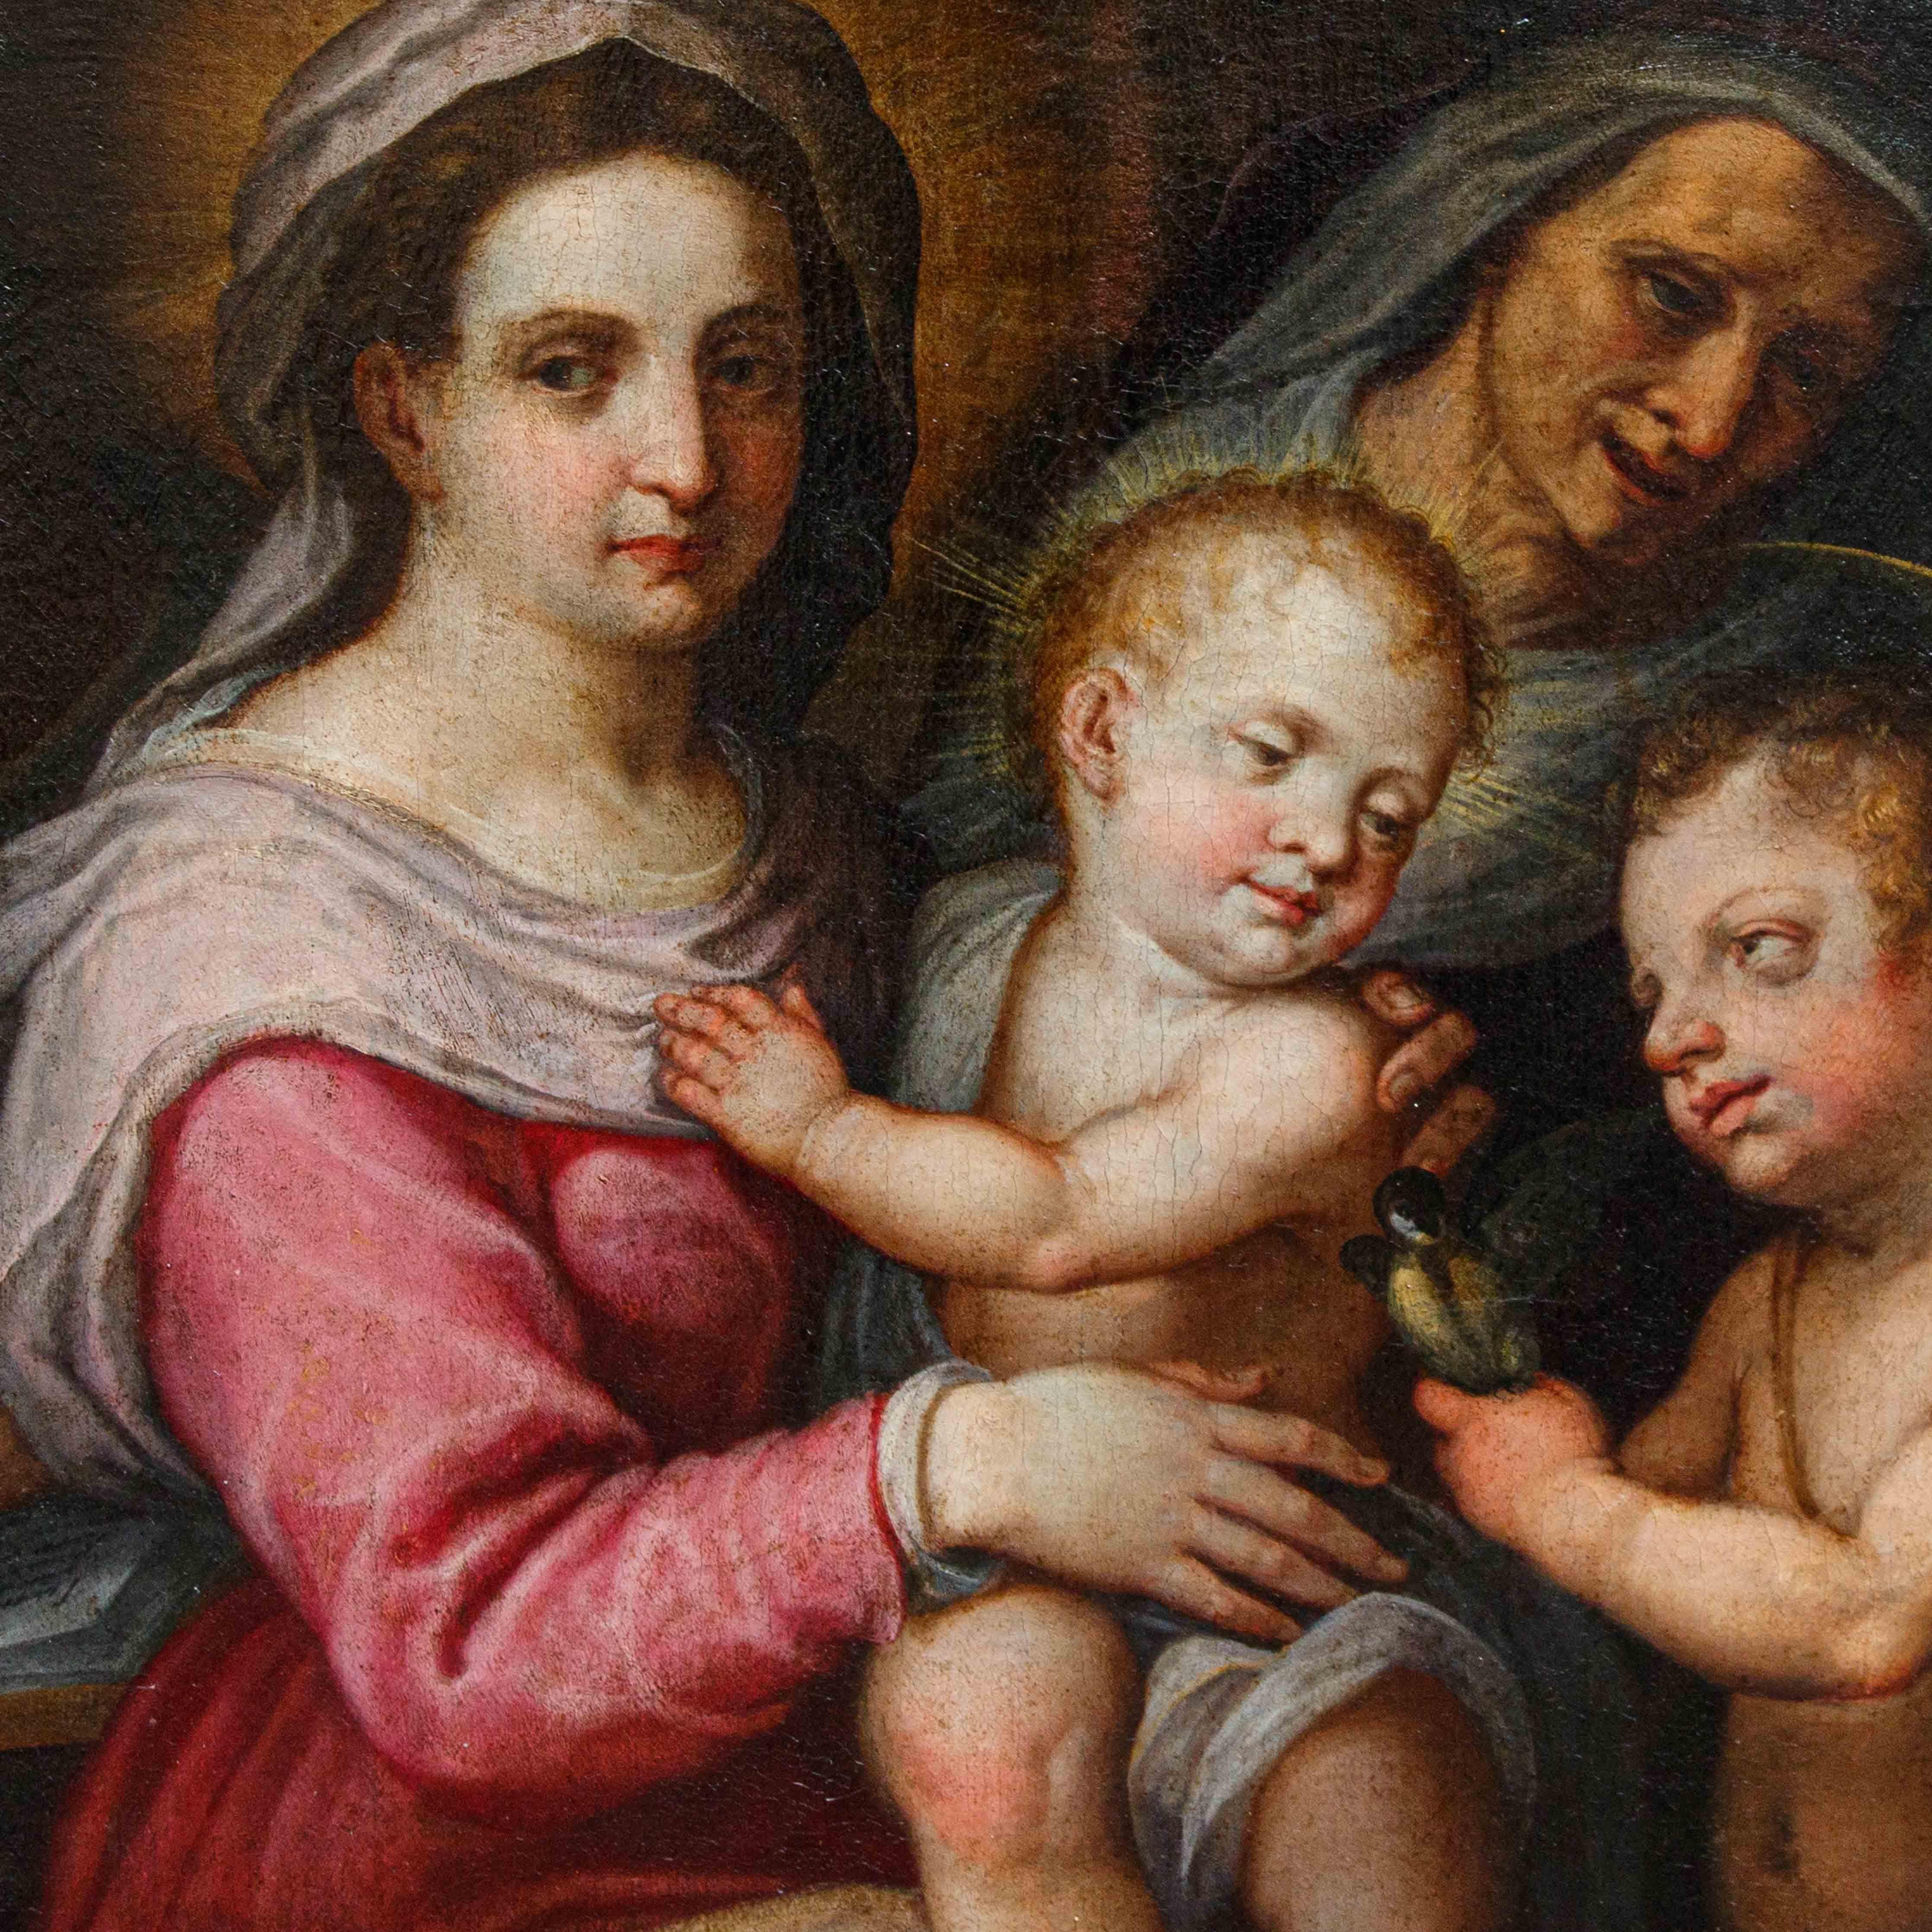 Giovanni Balducci, genannt Cosci (Florenz, 1560 - Neapel, 1631)

Madonna mit Kind, St. Johannes, St. Joseph und St. Elisabeth

Öl auf Leinwand, 120 x 110 cm

Die Madonna und das Kind, die in der Mitte der Komposition gut beleuchtet sind, werden von